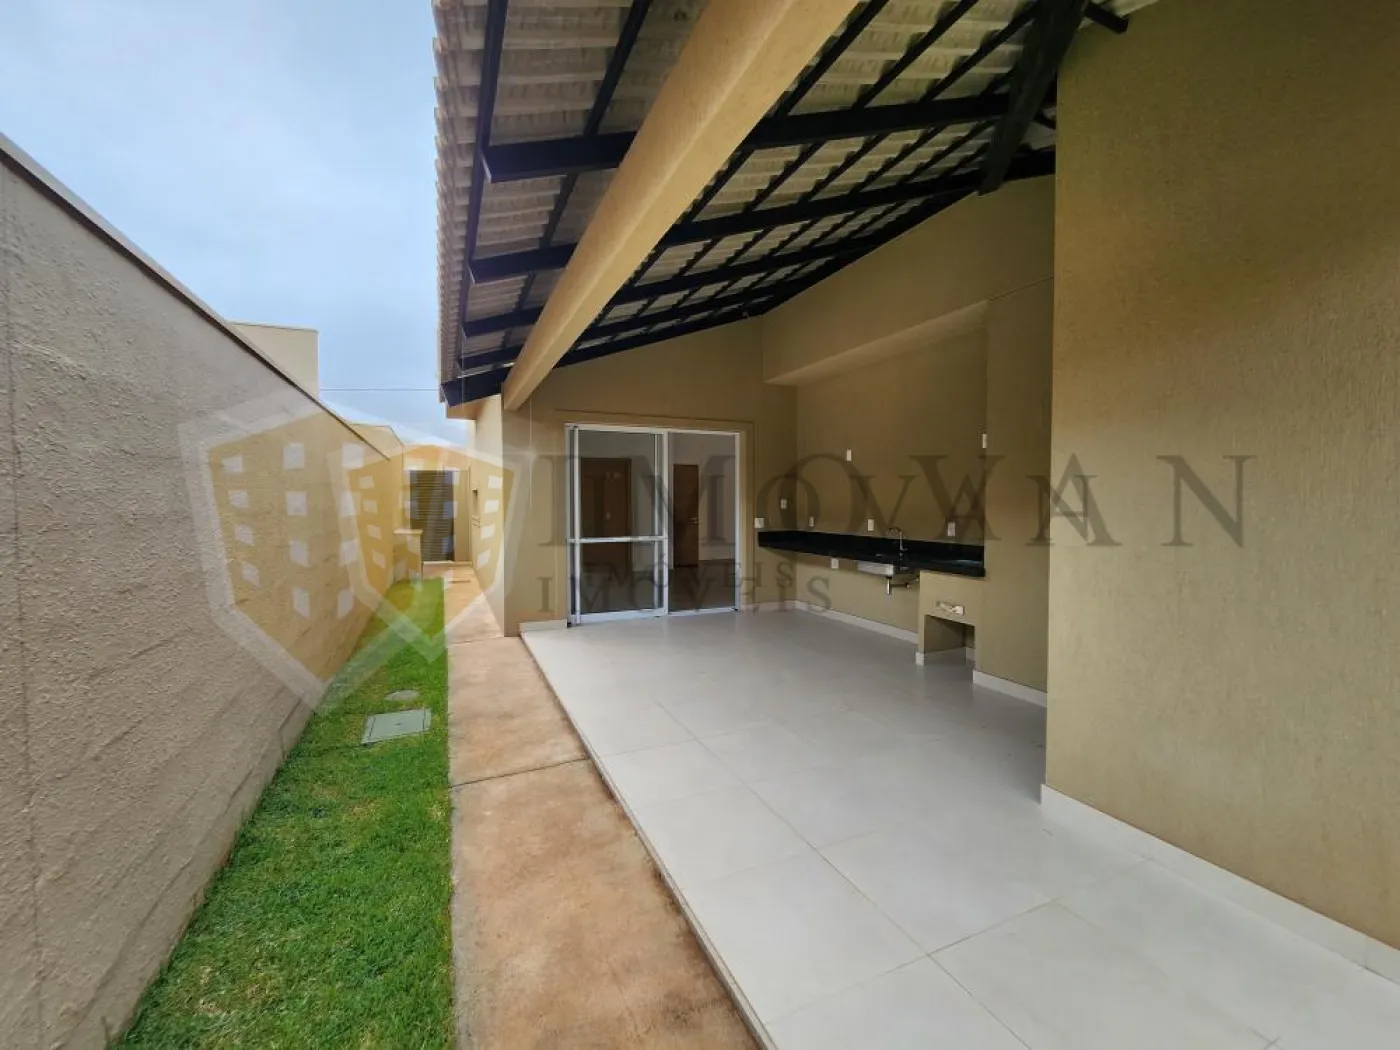 Comprar Casa / Condomínio em Cravinhos R$ 980.000,00 - Foto 13